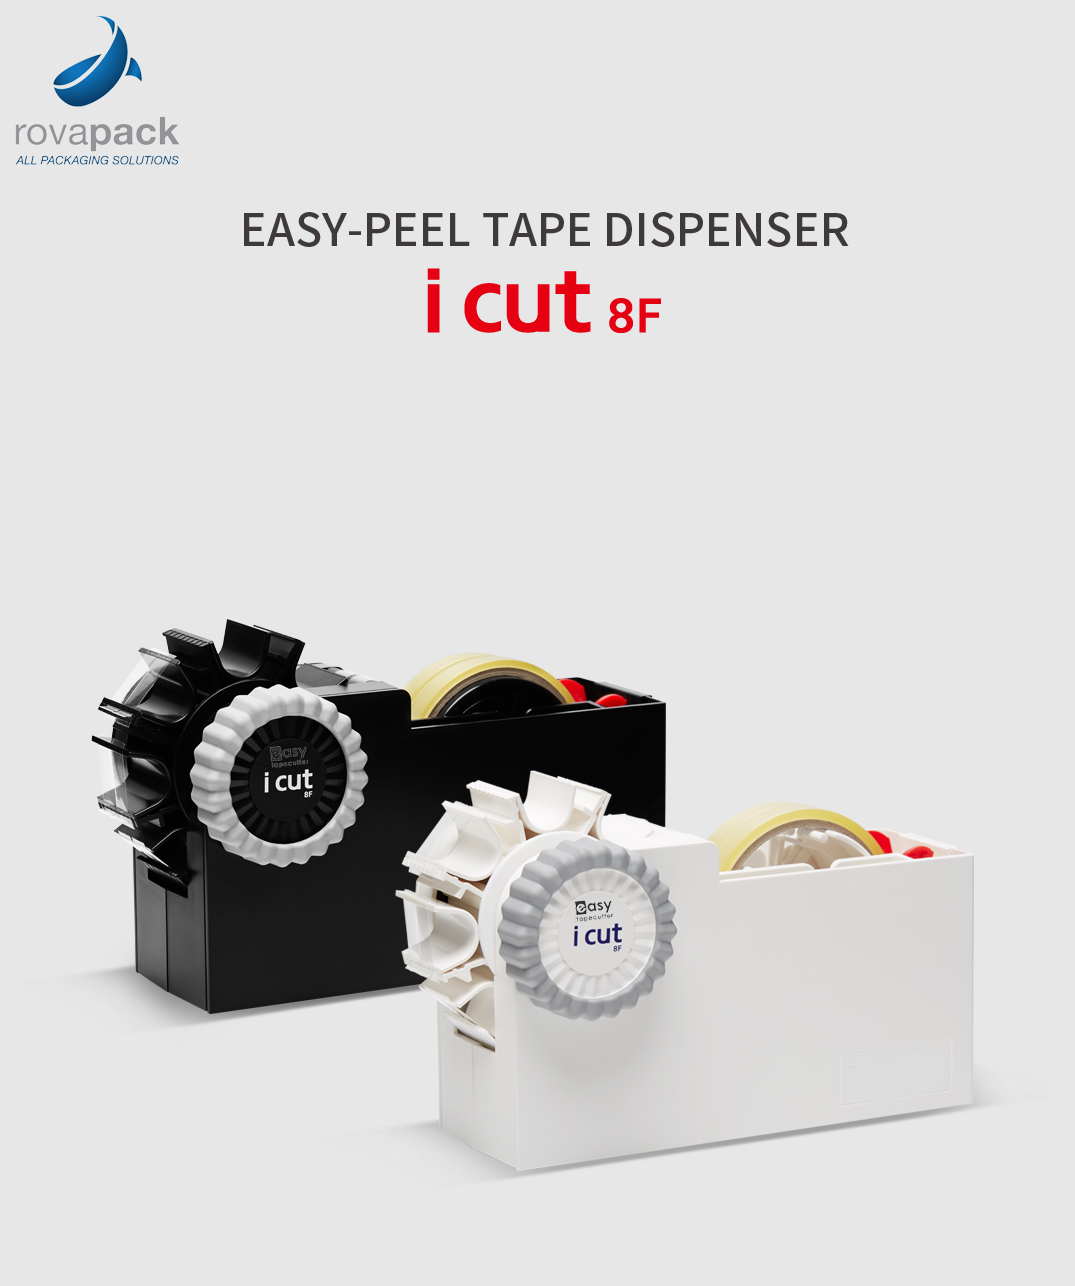 zoete smaak Klacht sextant iCut 8 Fold Plakbandhouder | Easy Tape Cutter | Rovapack